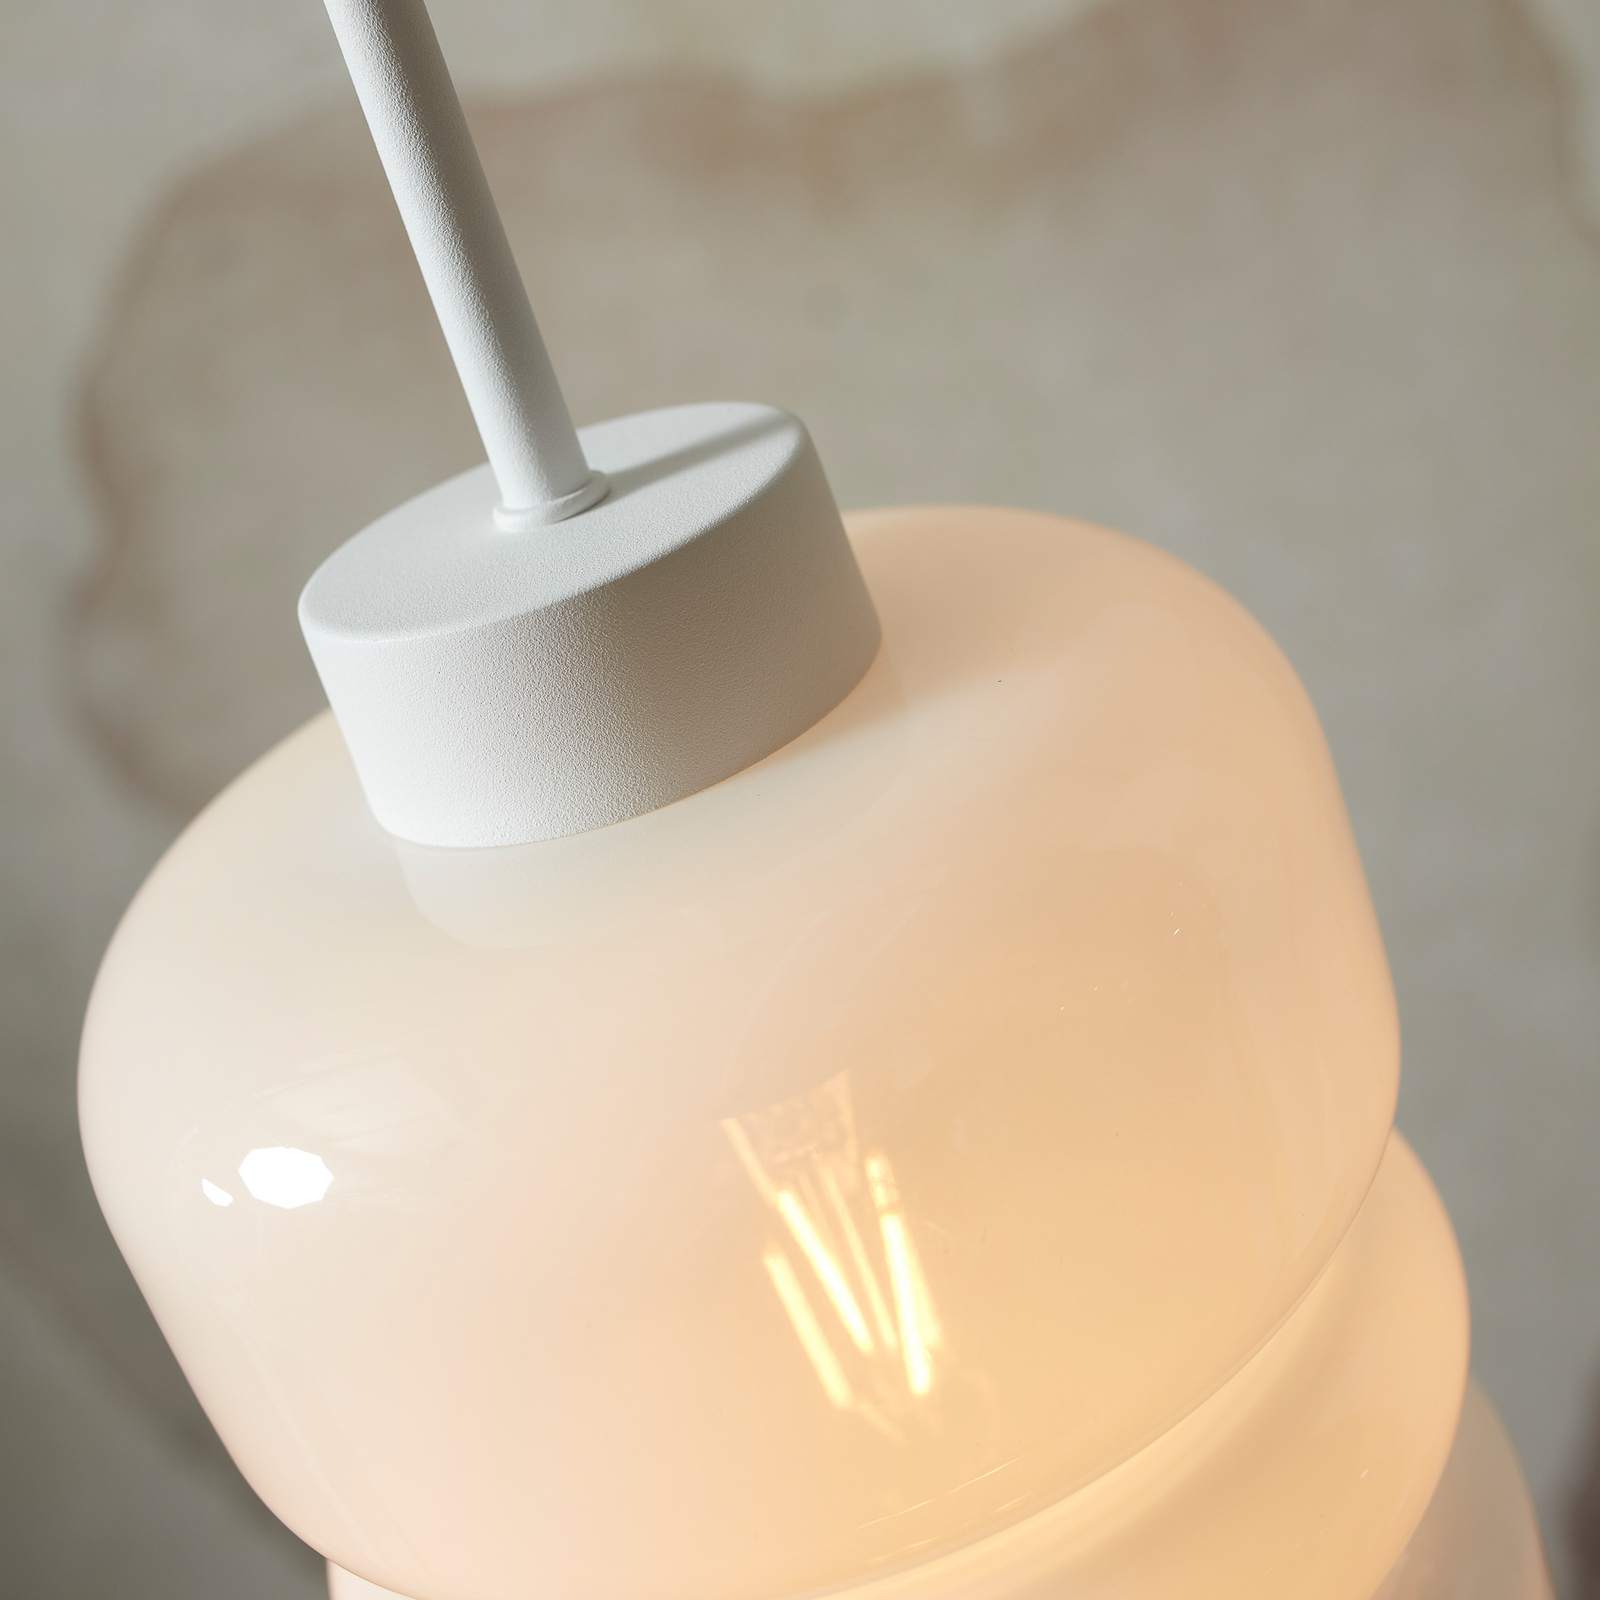 Trata-se da luminária suspensa RoMi Verona, branco leite, Ø 15 cm